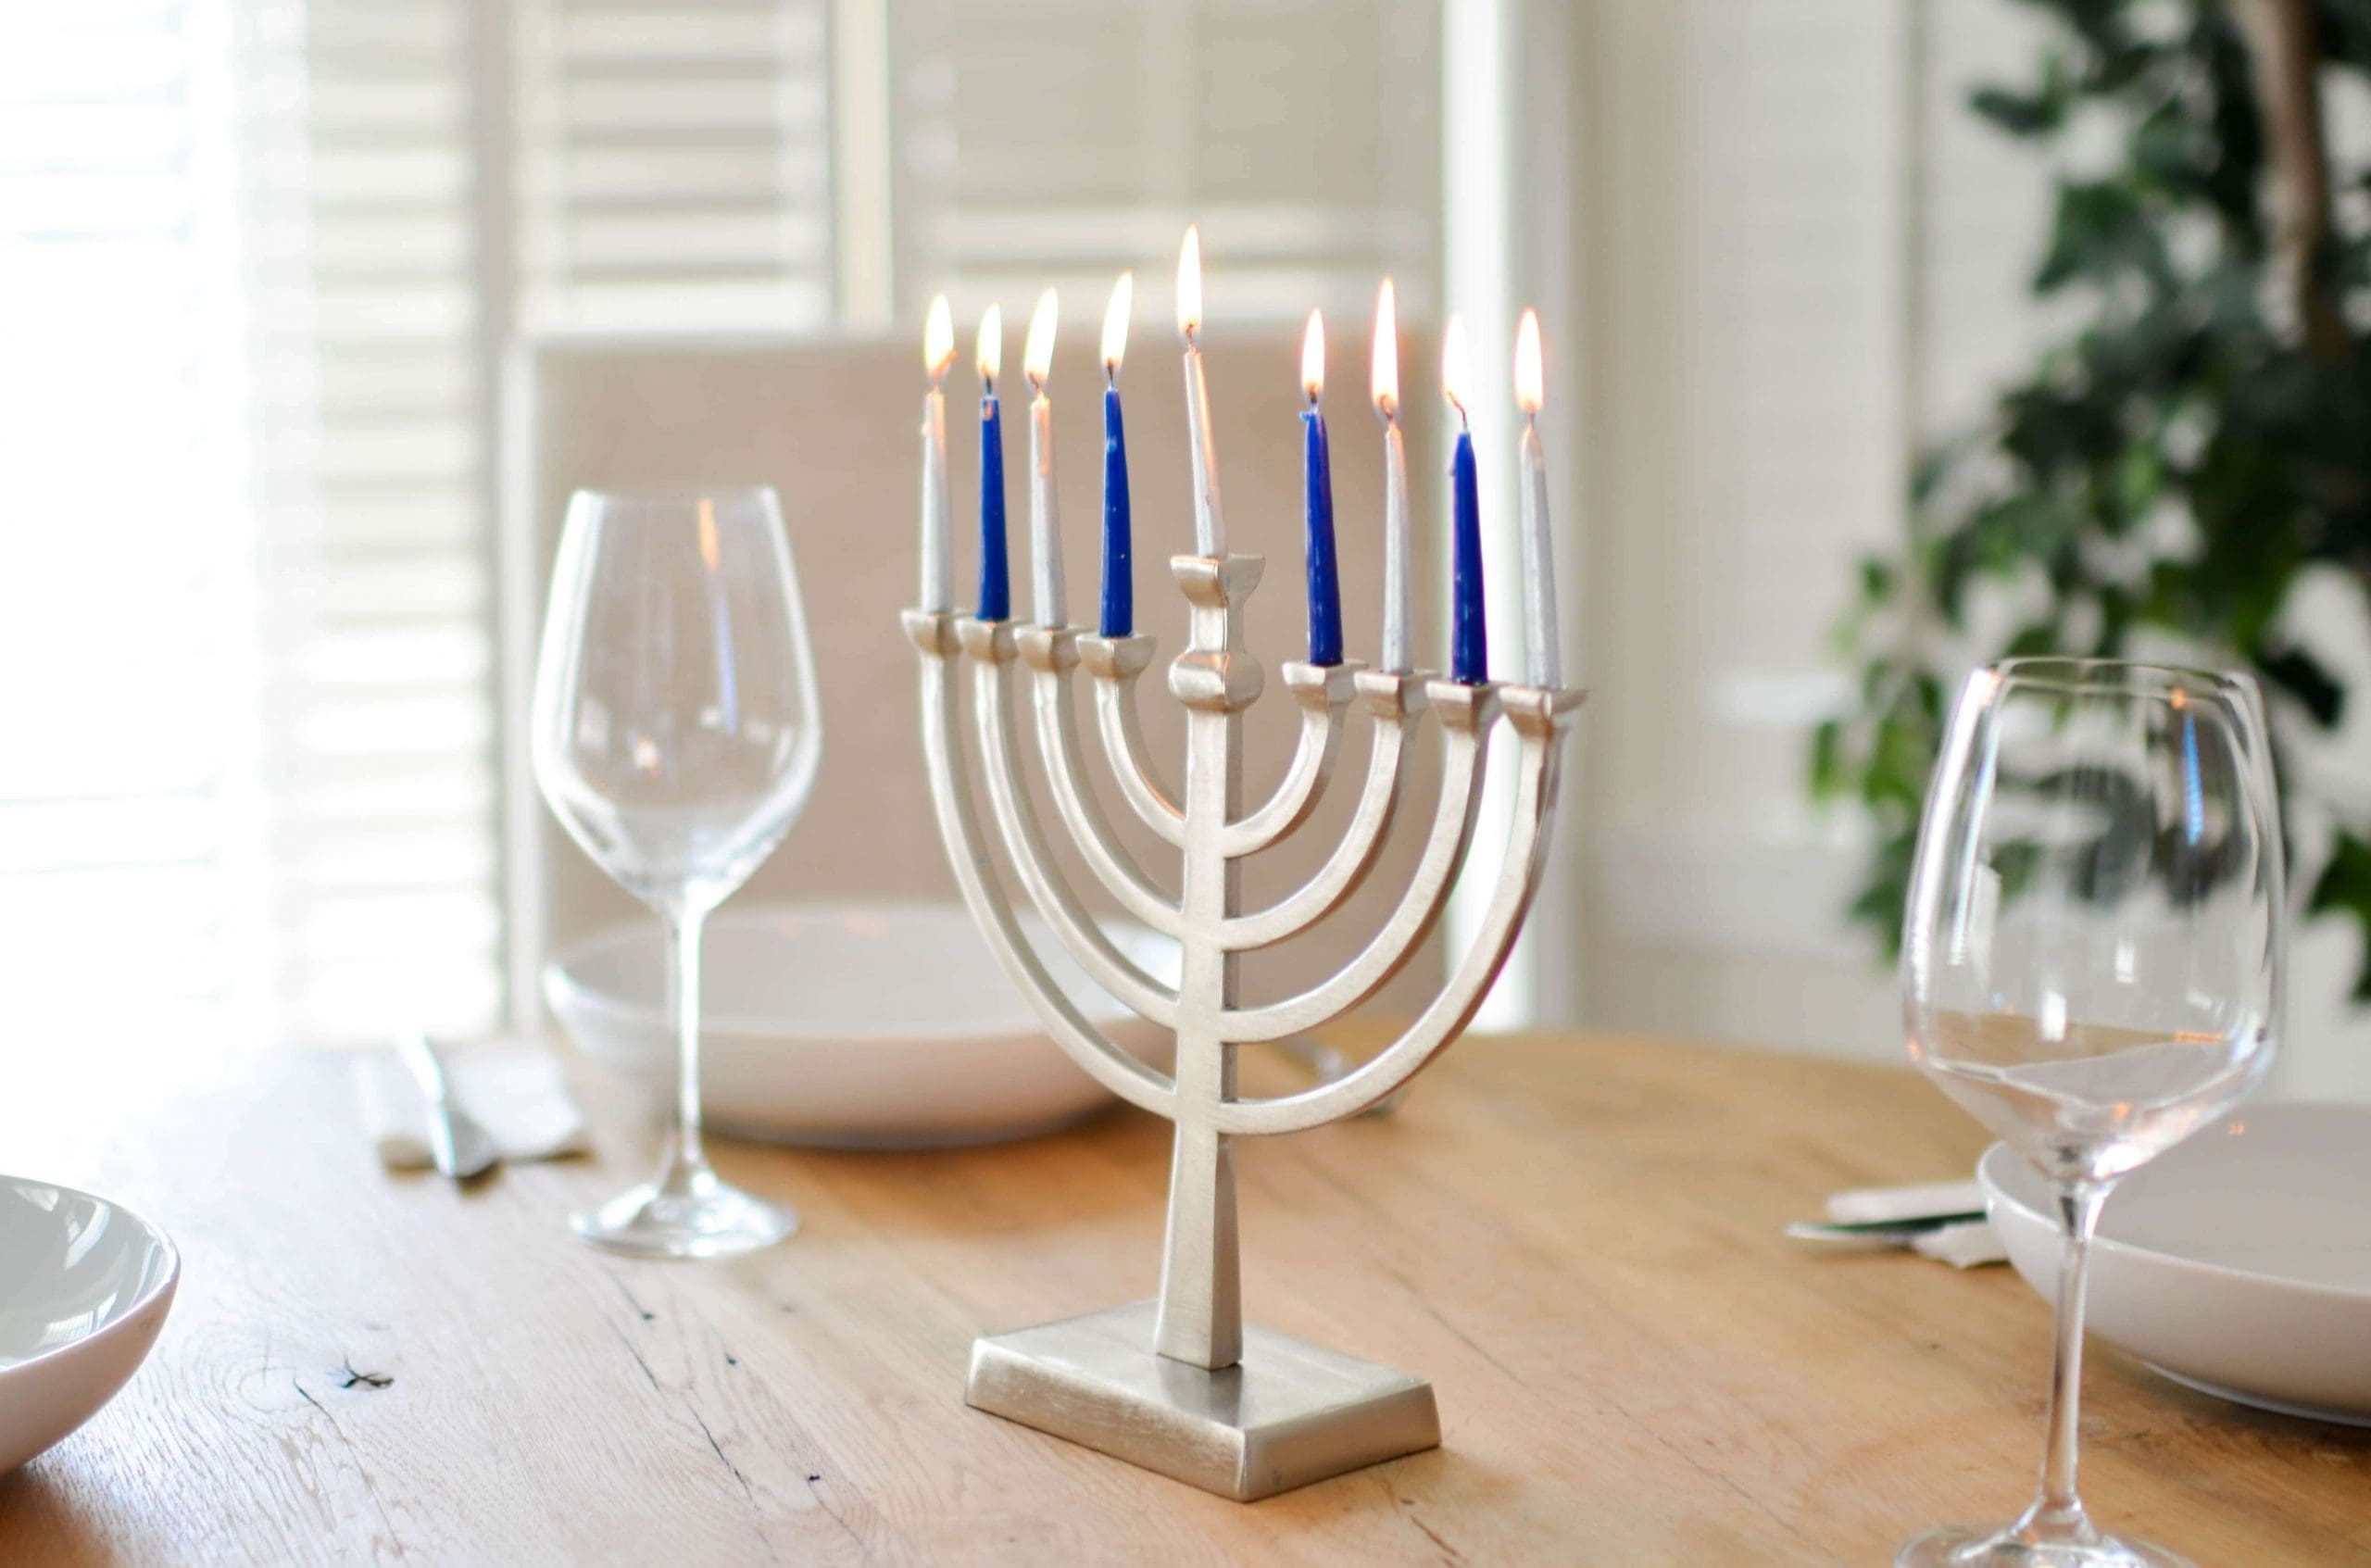 Jewish Home Care